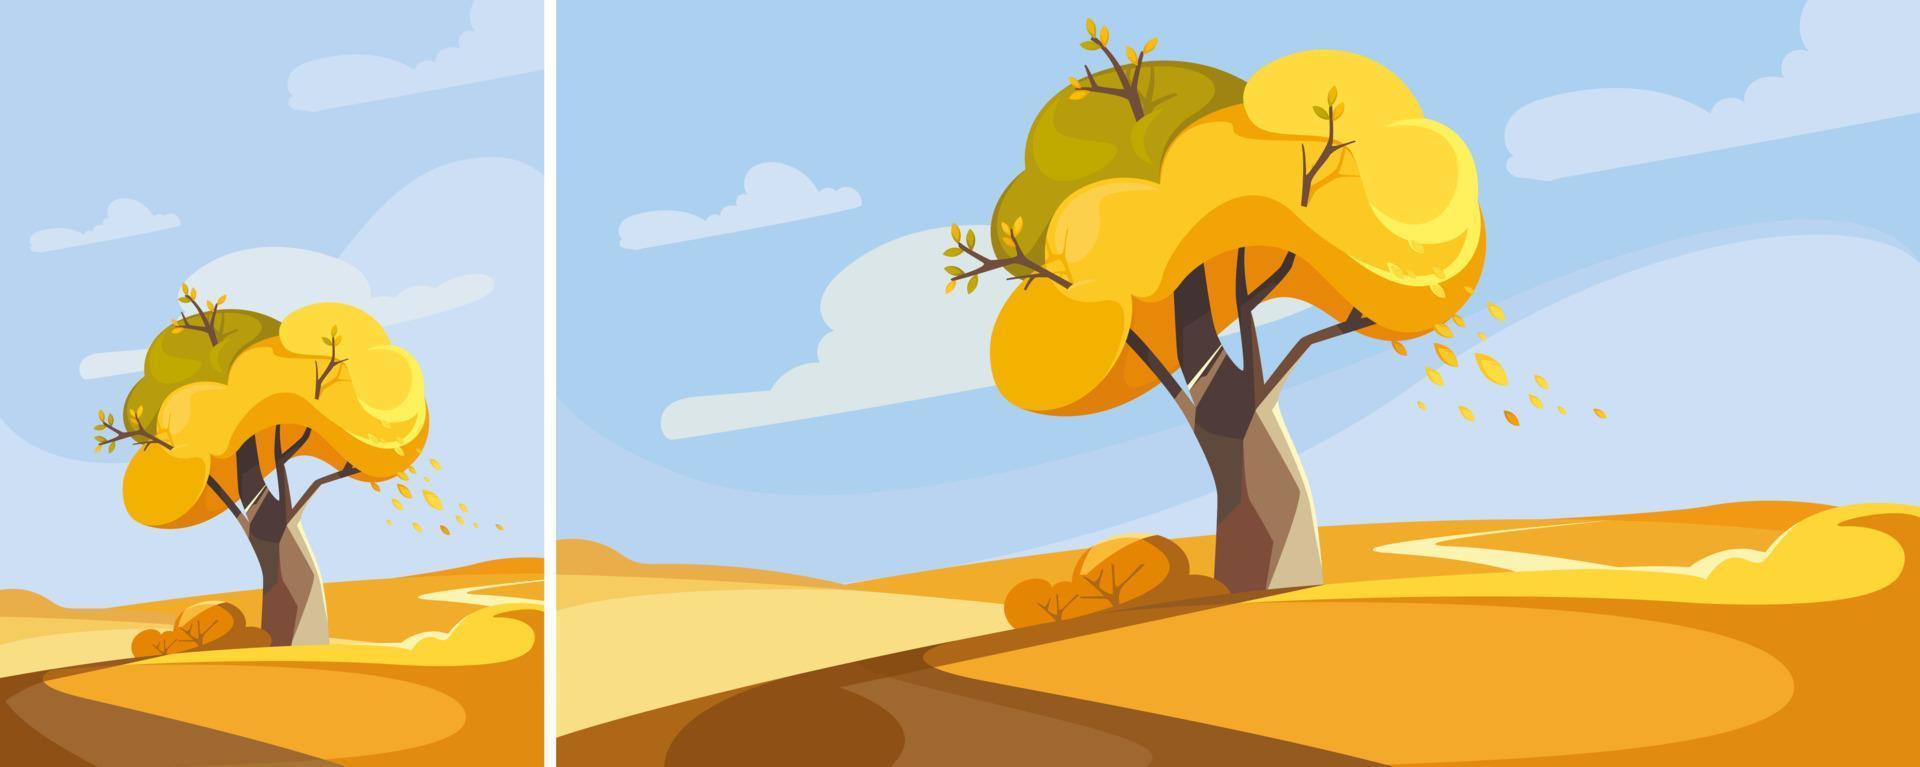 Baum auf dem Hügel in der Herbstsaison. Naturlandschaften in verschiedenen Formaten. vektor